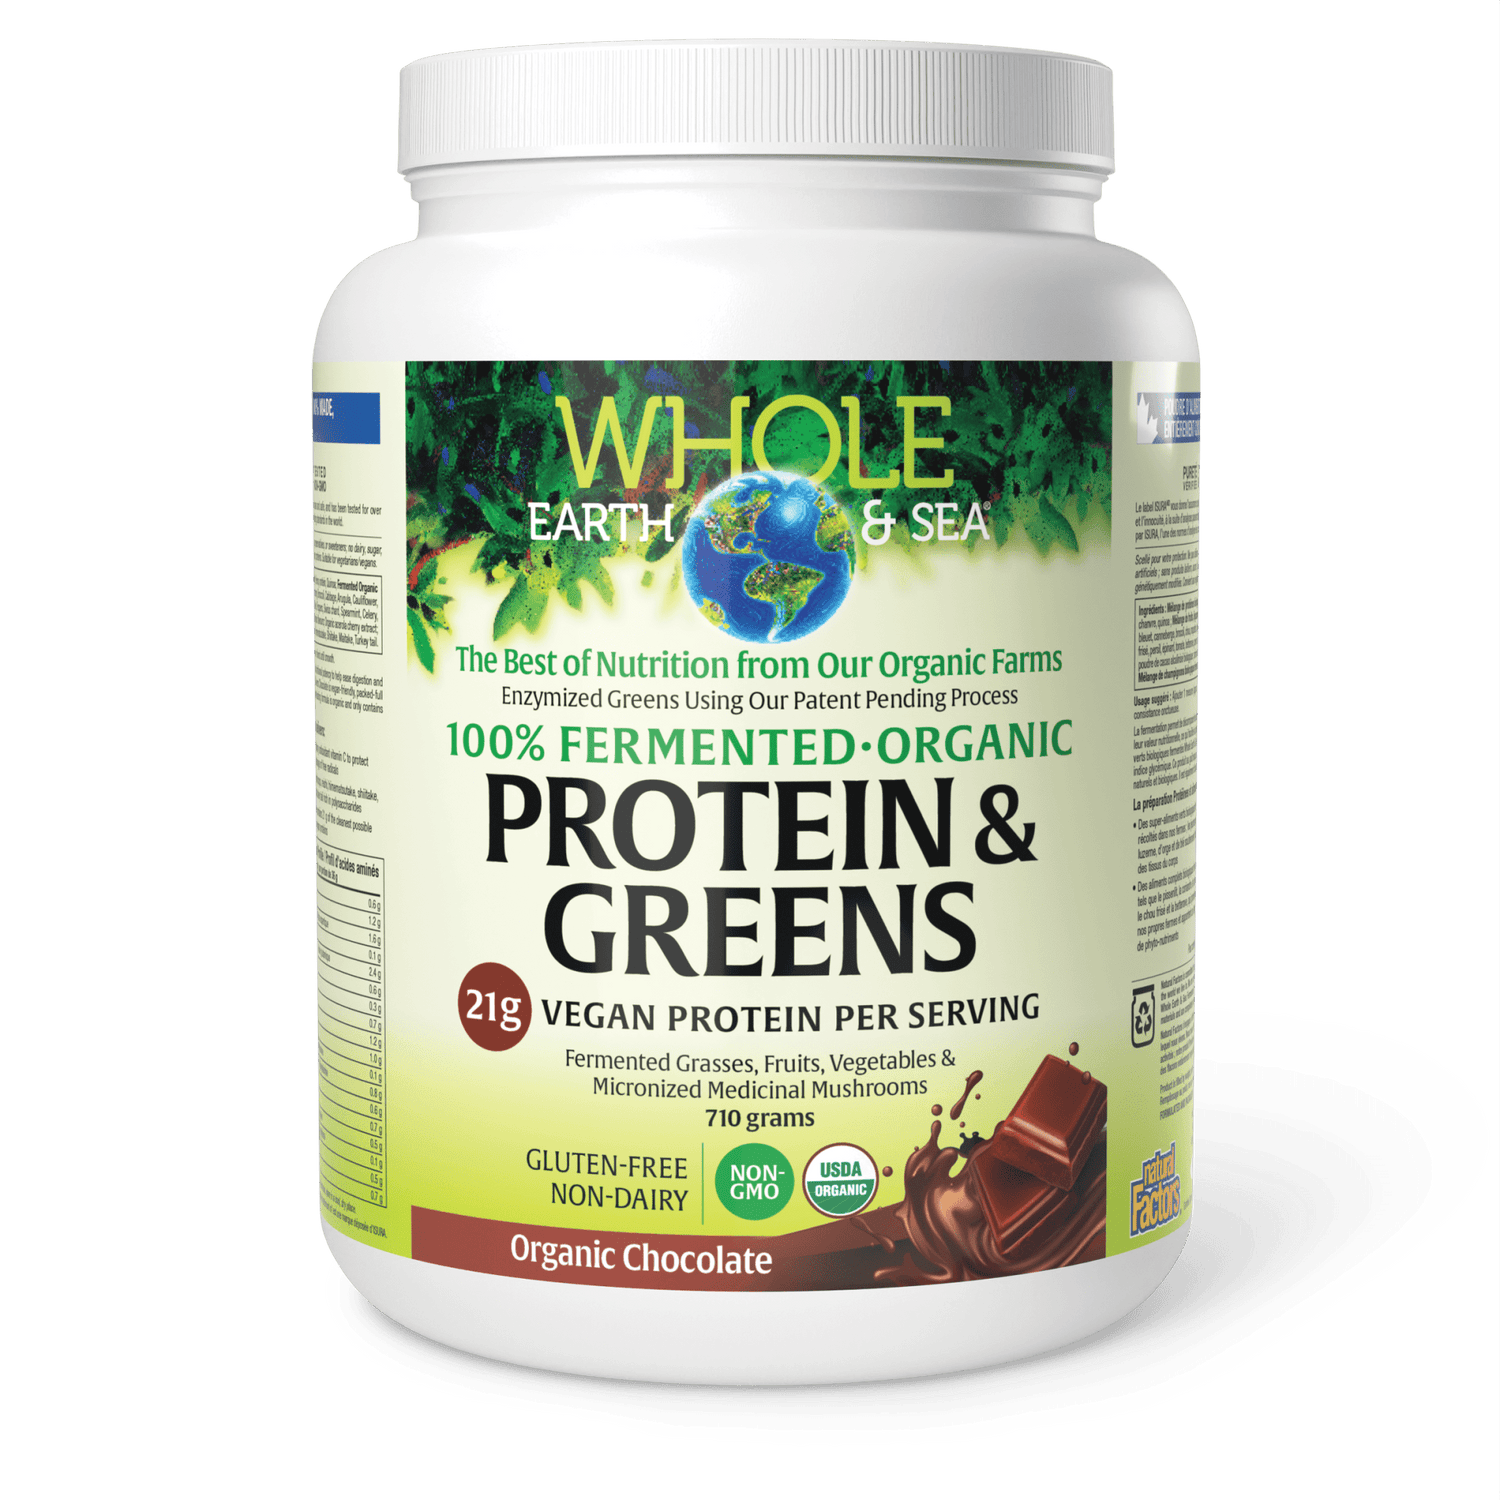 Fermented Organic Protein & Greens, Organic Chocolate, Whole Earth & Sea, Whole Earth & Sea®|v|image|35535